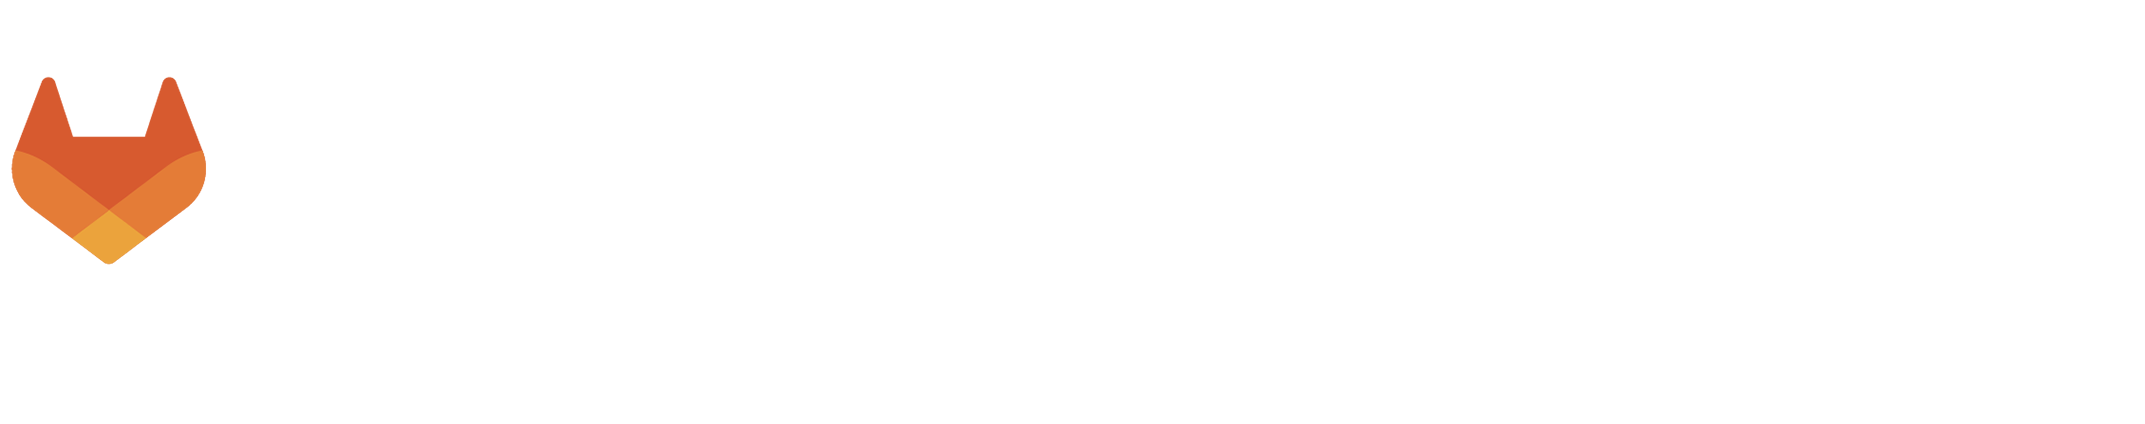 日本のDev@Opsをアップデートする二週間 GitLab Connect Japan 2022 11/29(Tue)-12/8(Thu)